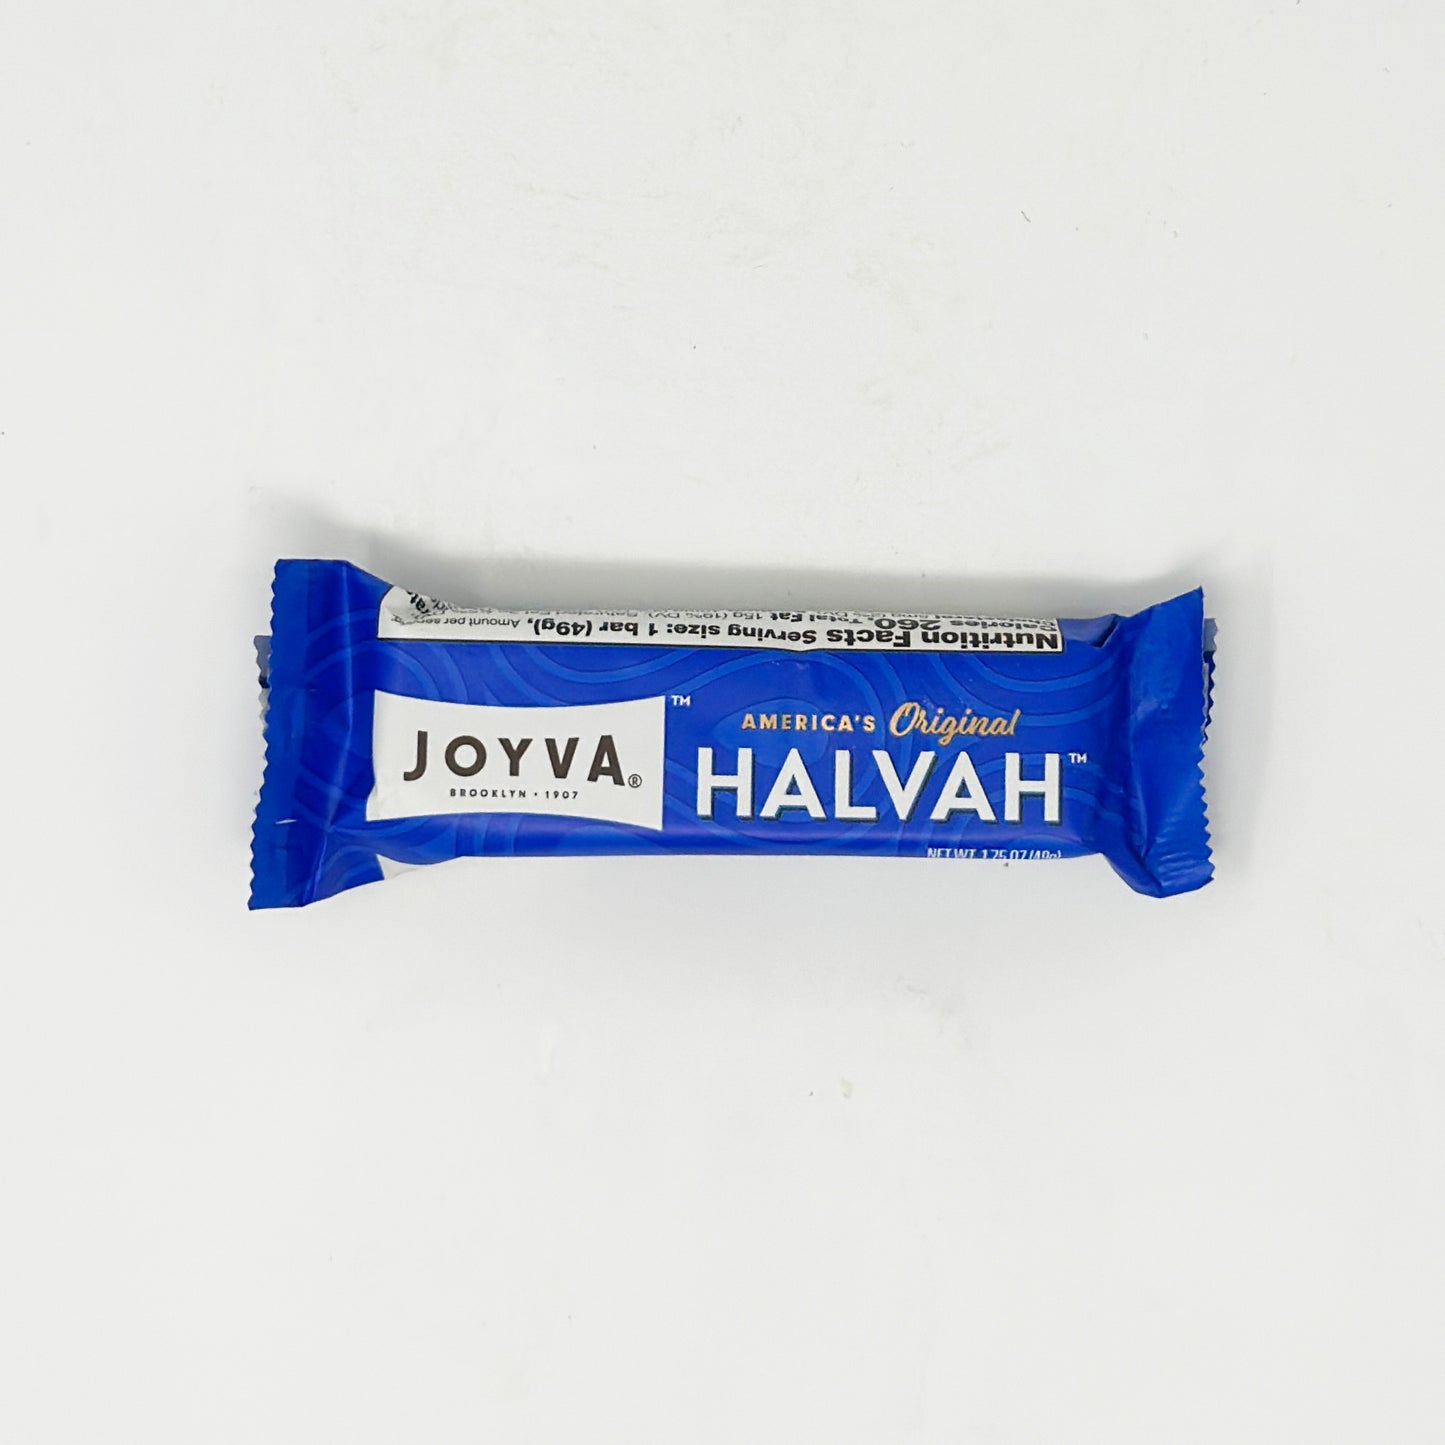 Joyva Halvah Vanilla 1.75 oz